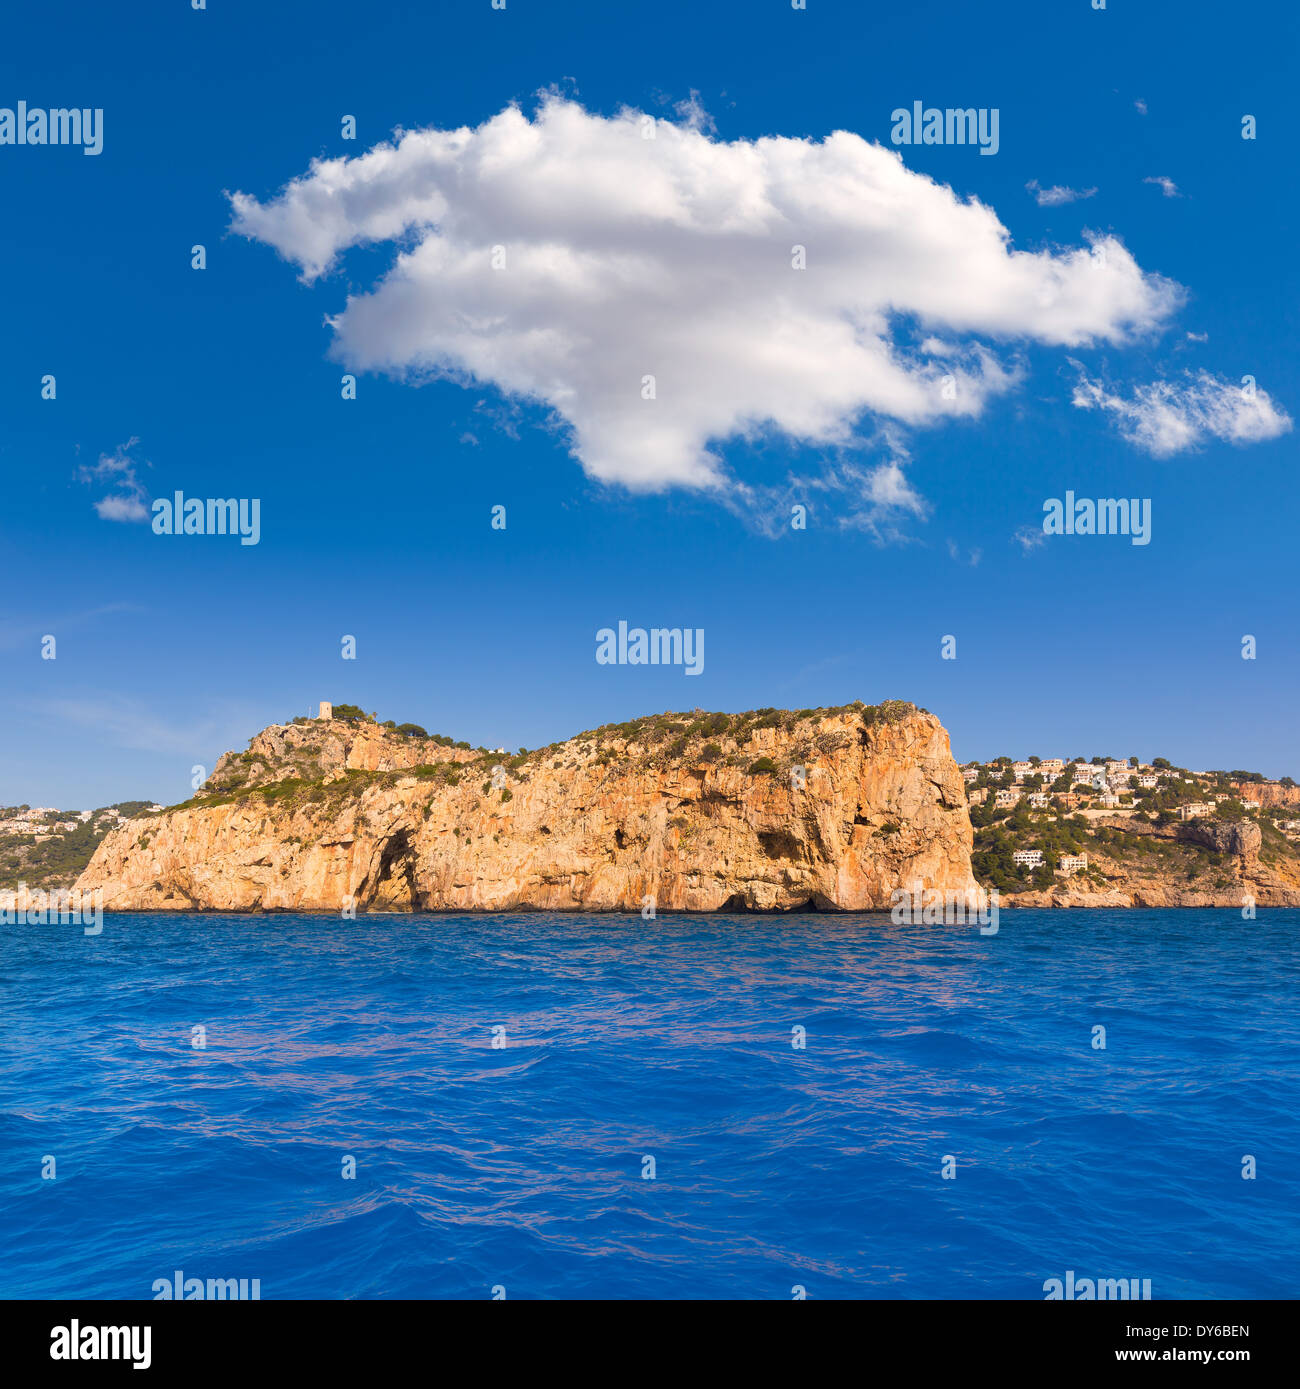 Javea Isla del Descubridor Xabia in Mediterranean Alicante at Spain Stock Photo